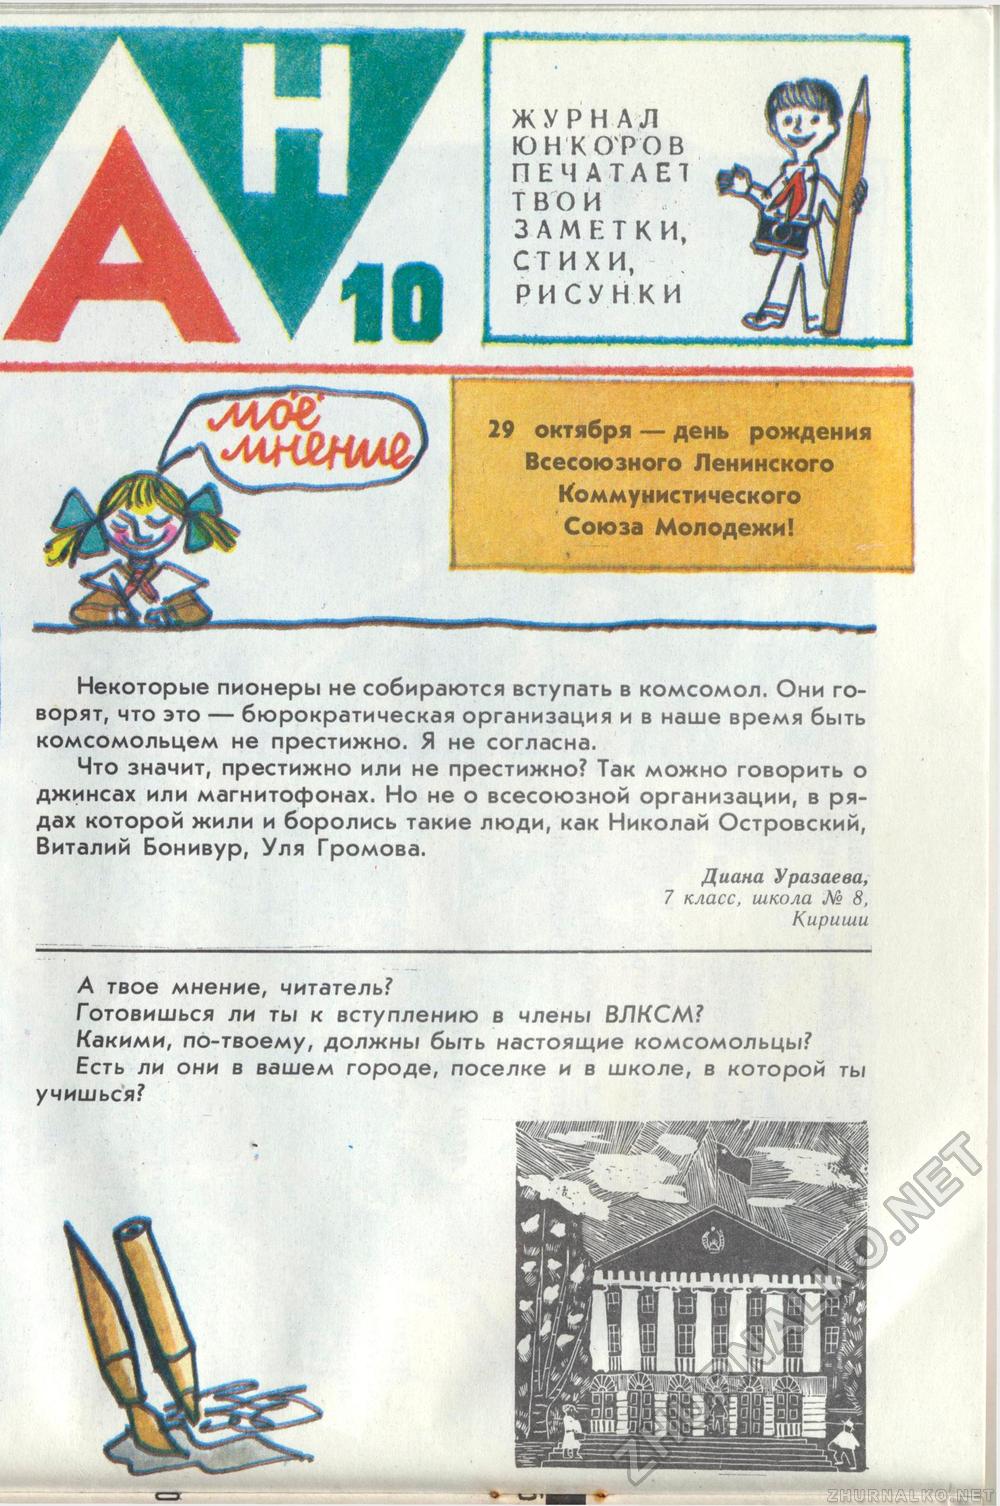  1989-10,  19